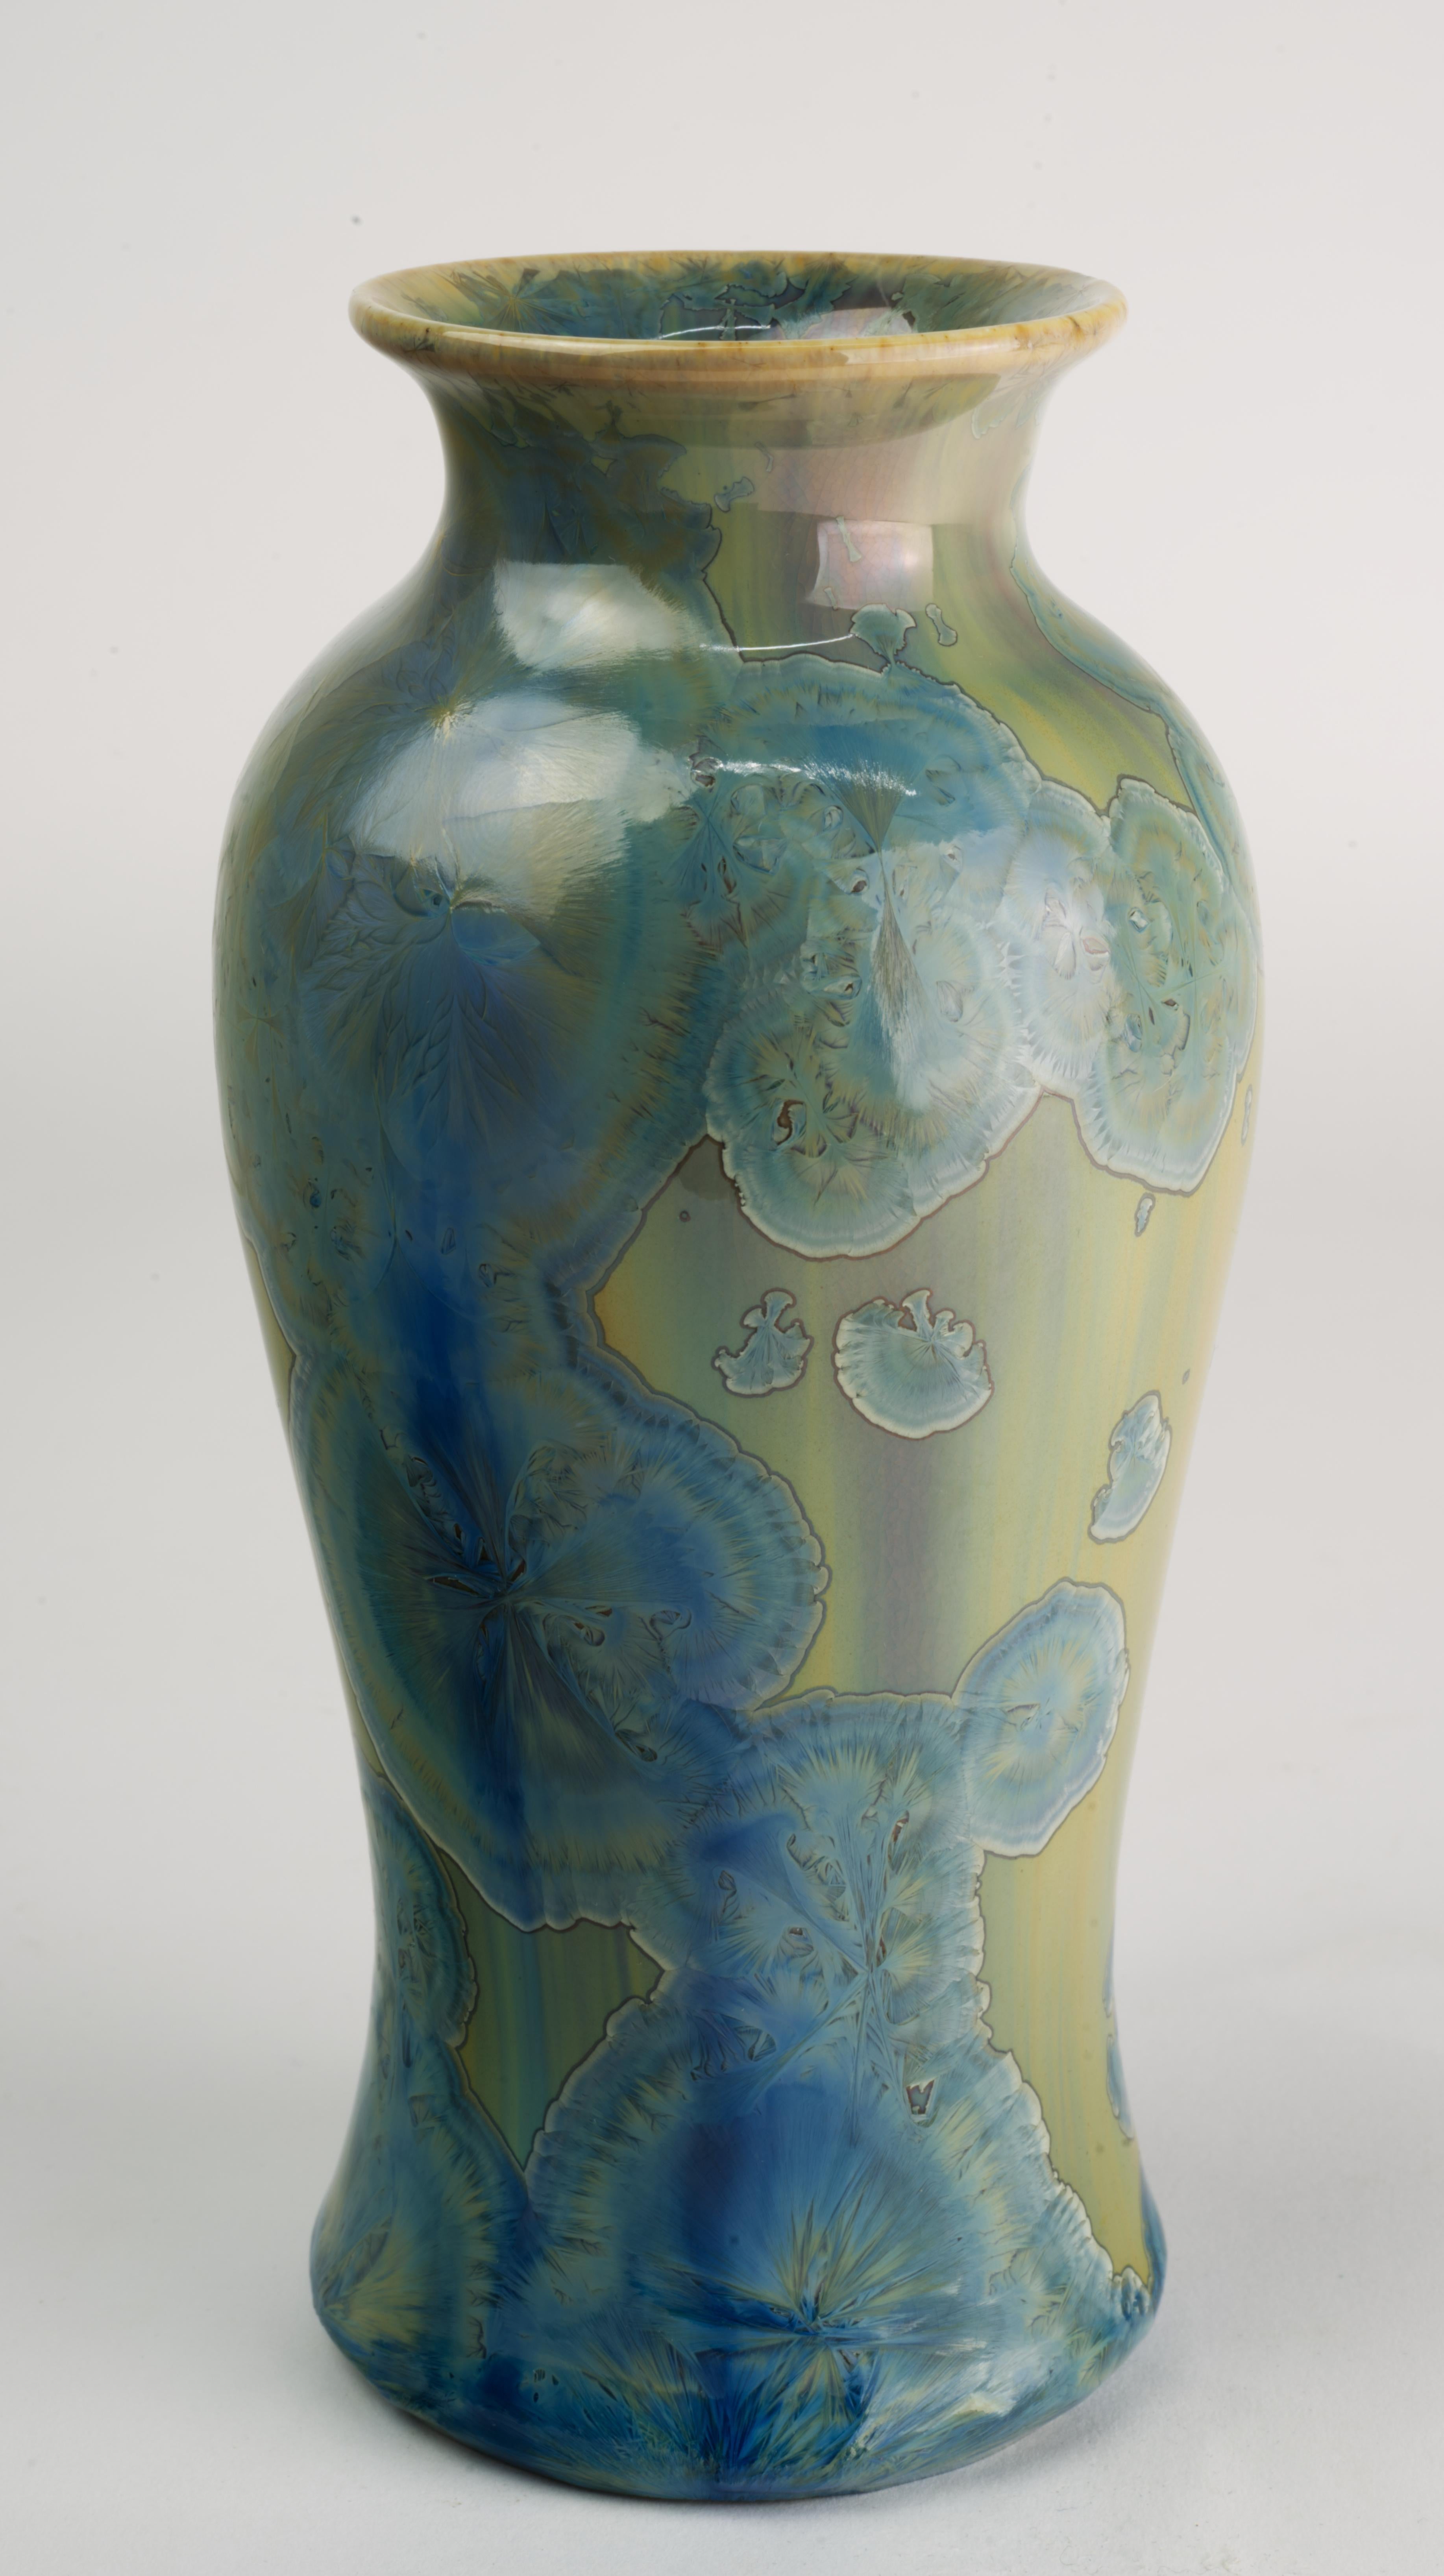  Le vase en céramique du Vintage Art Studio pottery est décoré d'une glaçure cristalline dans une palette organique et délicate d'olive et de bleu ciel. Le vase a été jeté à la main sur un tour ; les cristaux de couleur bleue sur une base de couleur